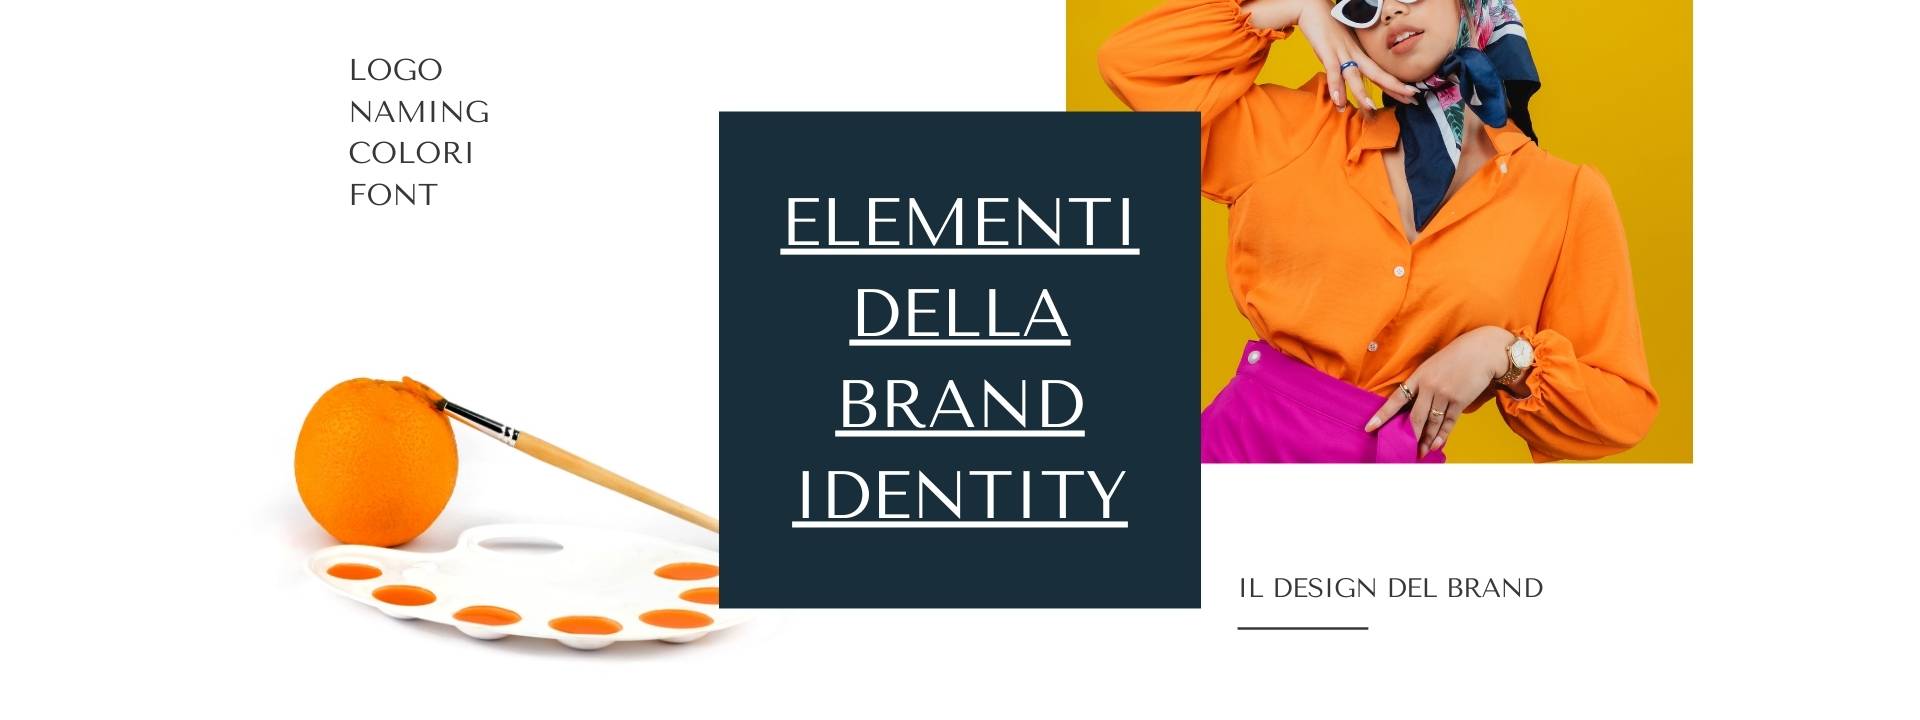 Brand identity per il personal branding